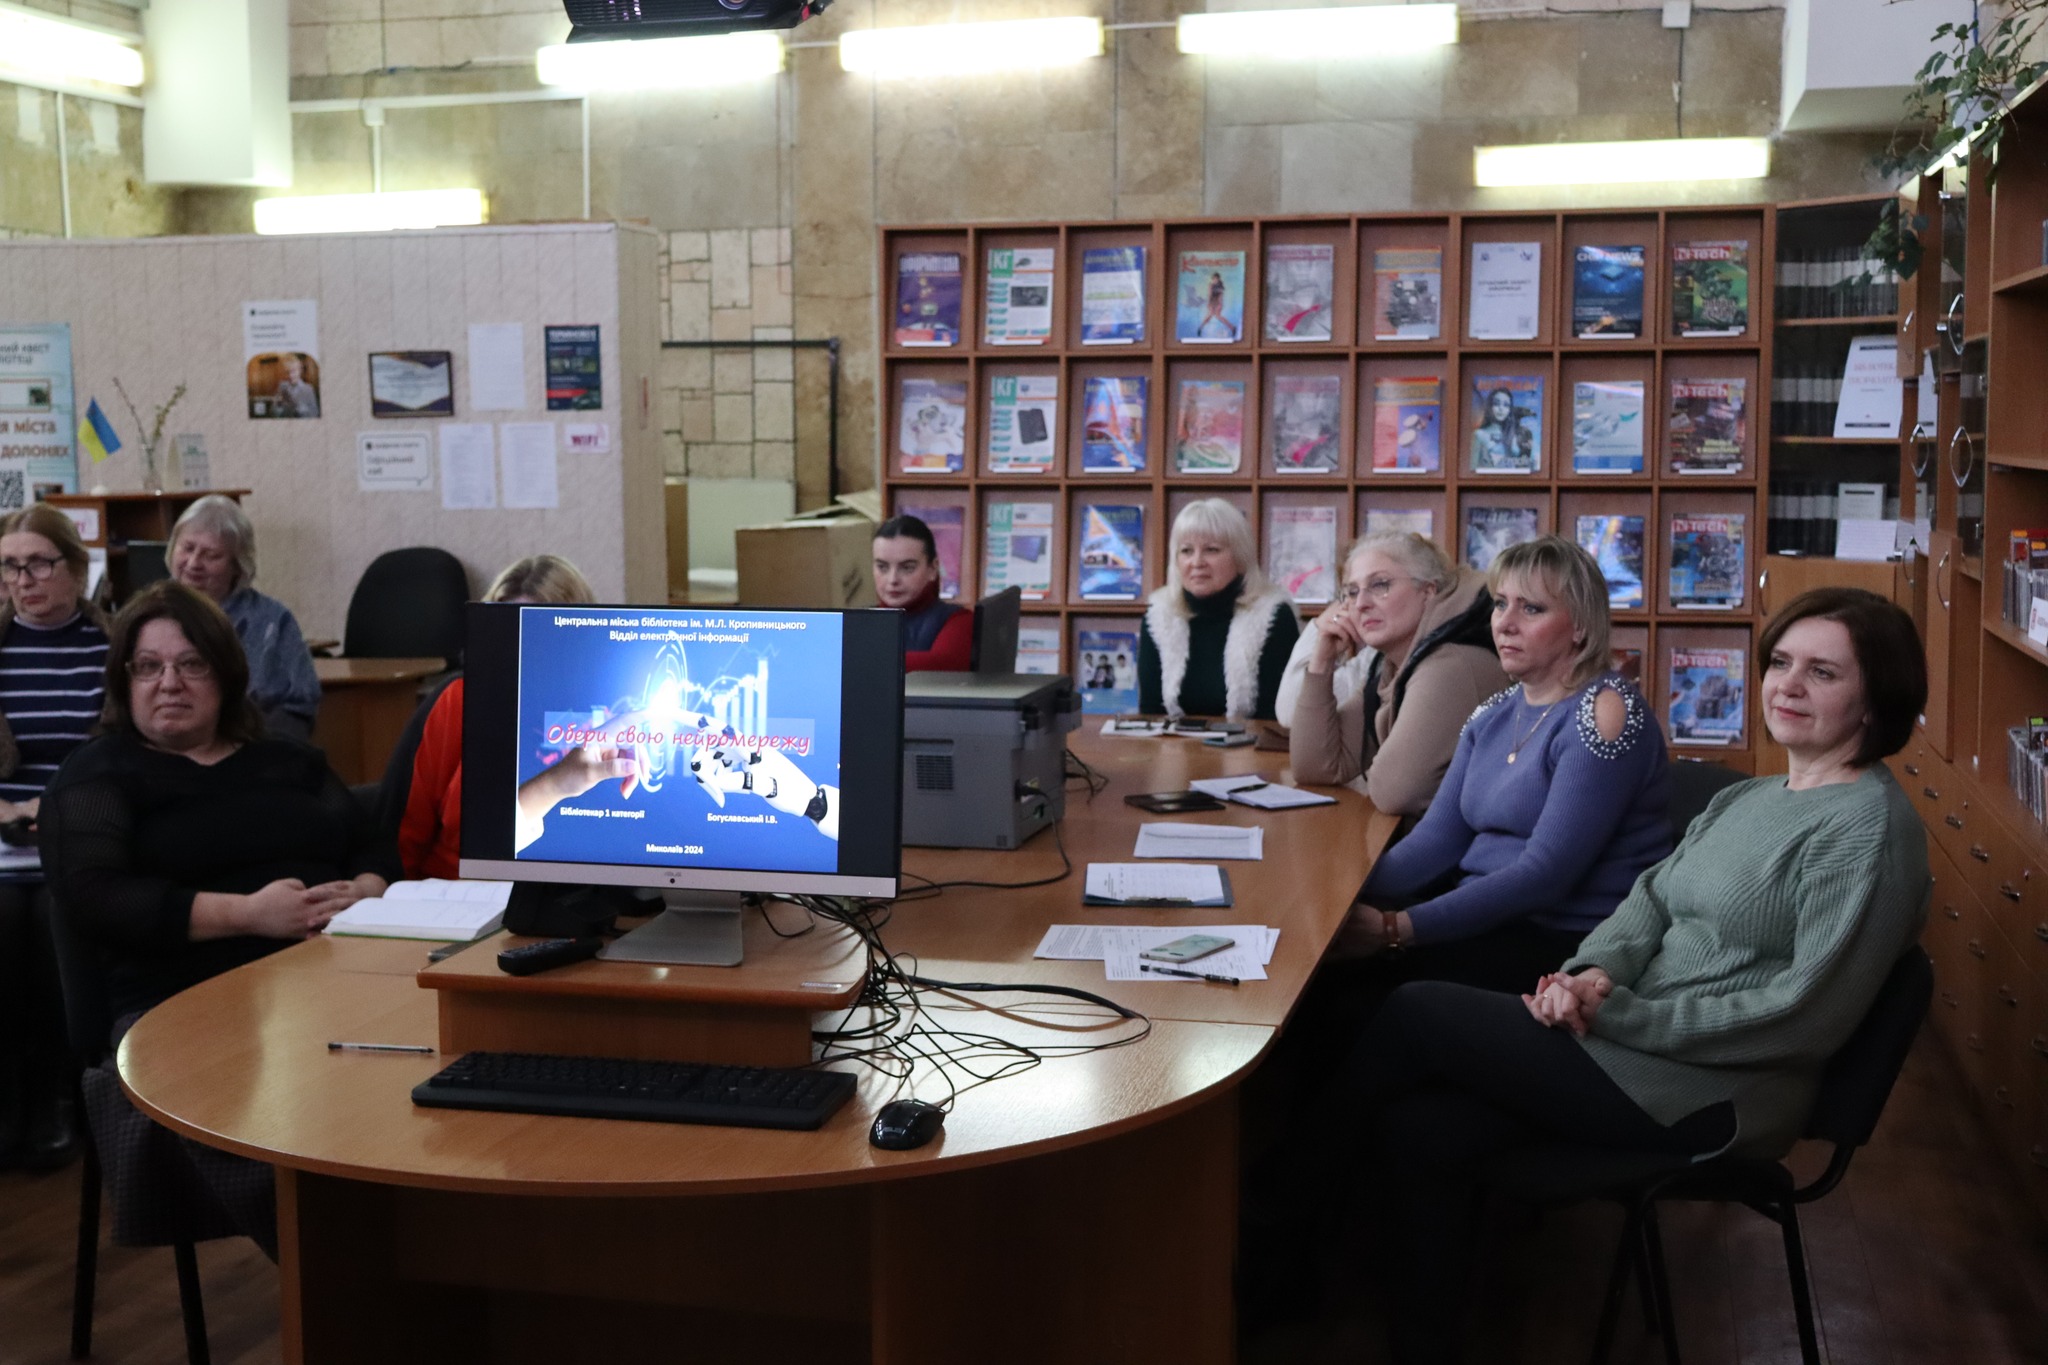 Бібліотекарі  відділу електронної інформації ЦМБ імені Марка Лукича Кропивницького запросили своїх колег на майстер-клас по штучному інтелекту